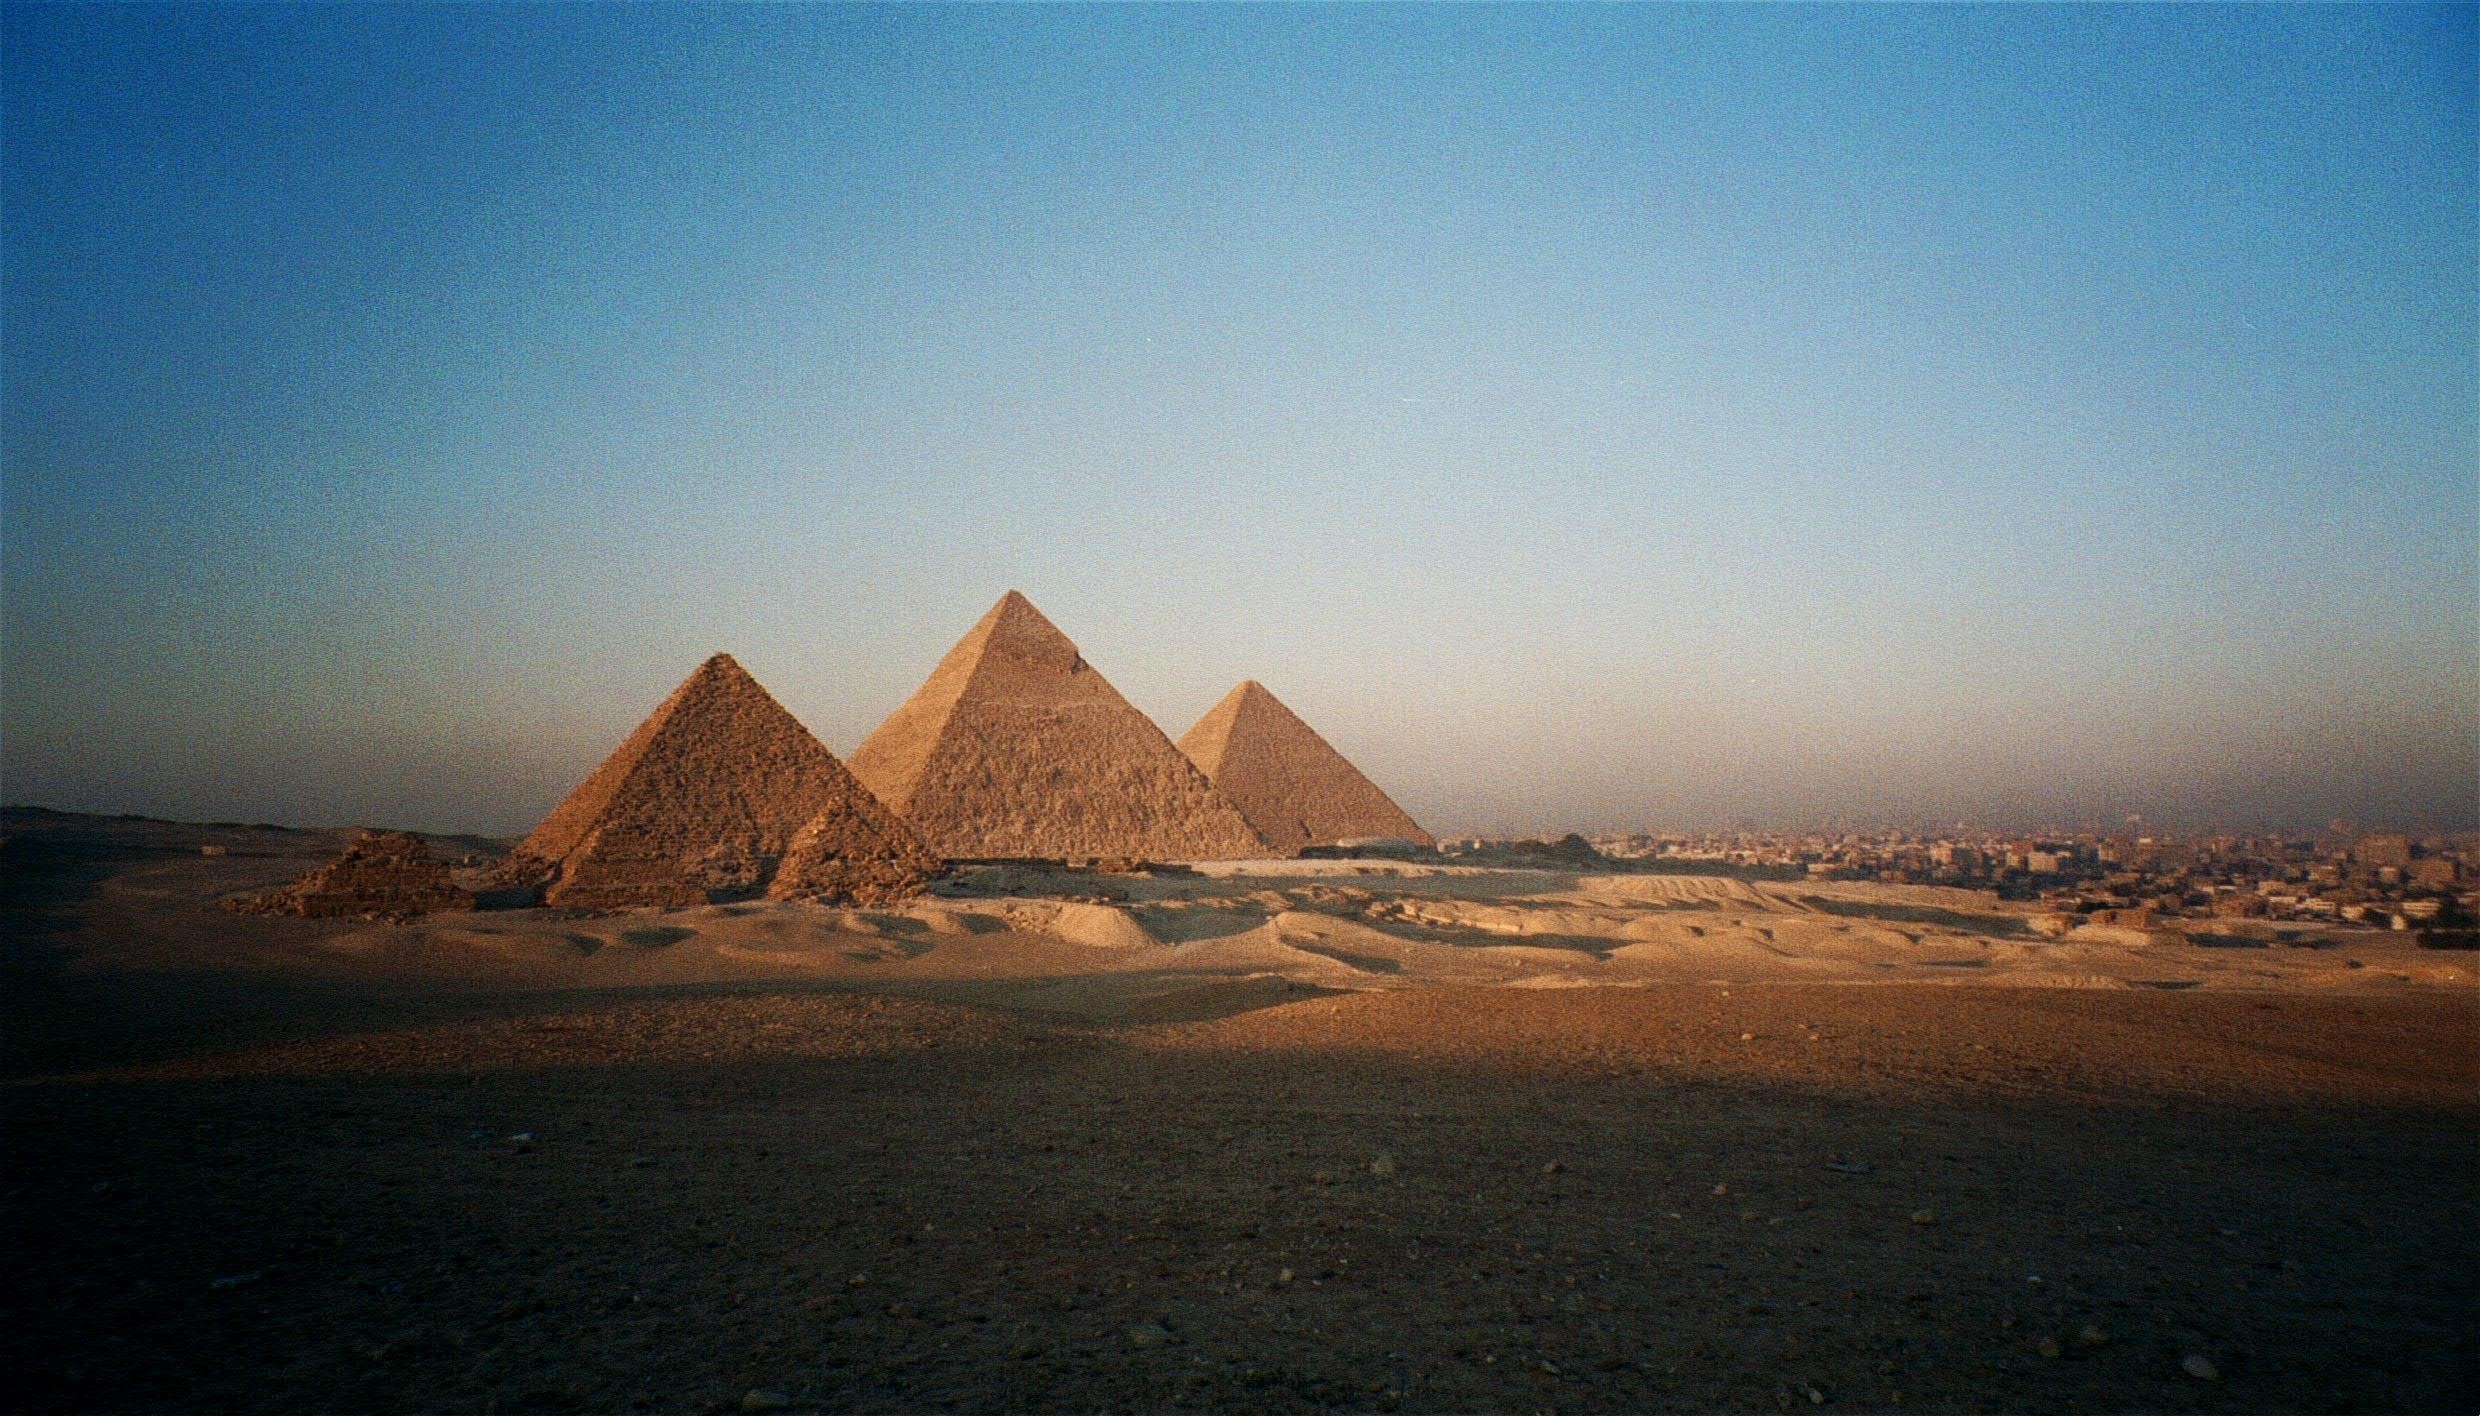 pyramiden von gizeh tapete,pyramide,monument,alte geschichte,himmel,unesco weltkulturerbe